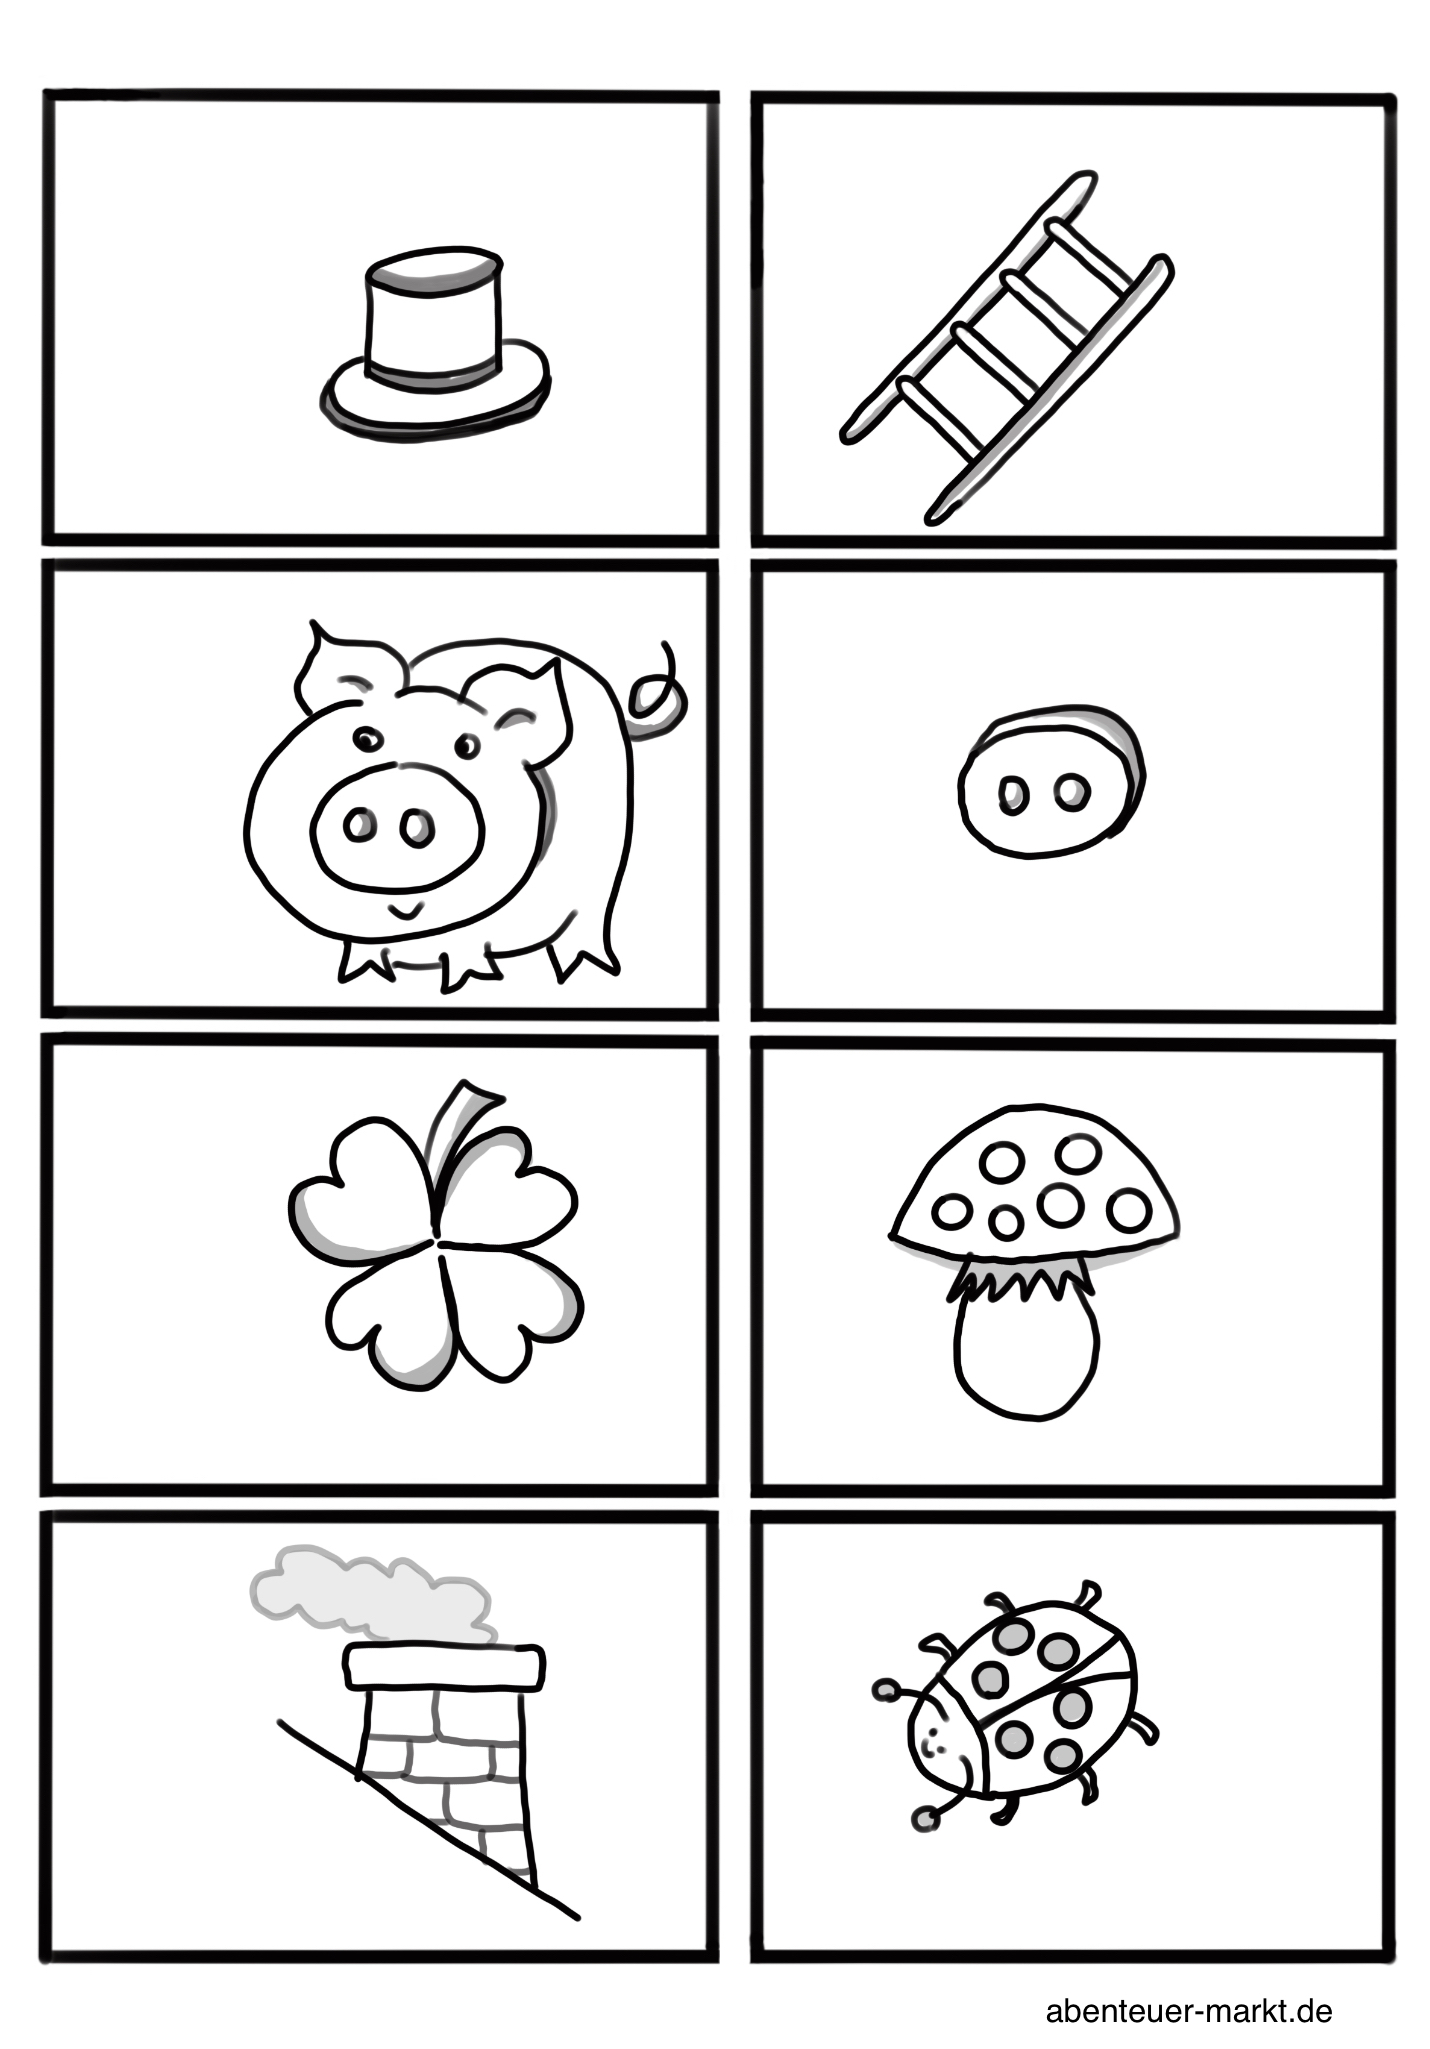 Bild zum Schritt 2 für das Bastel- und DIY-Abenteuer für Kinder: 'Druckt euch die Symbol-Karten aus oder malt euch die Symbole...'